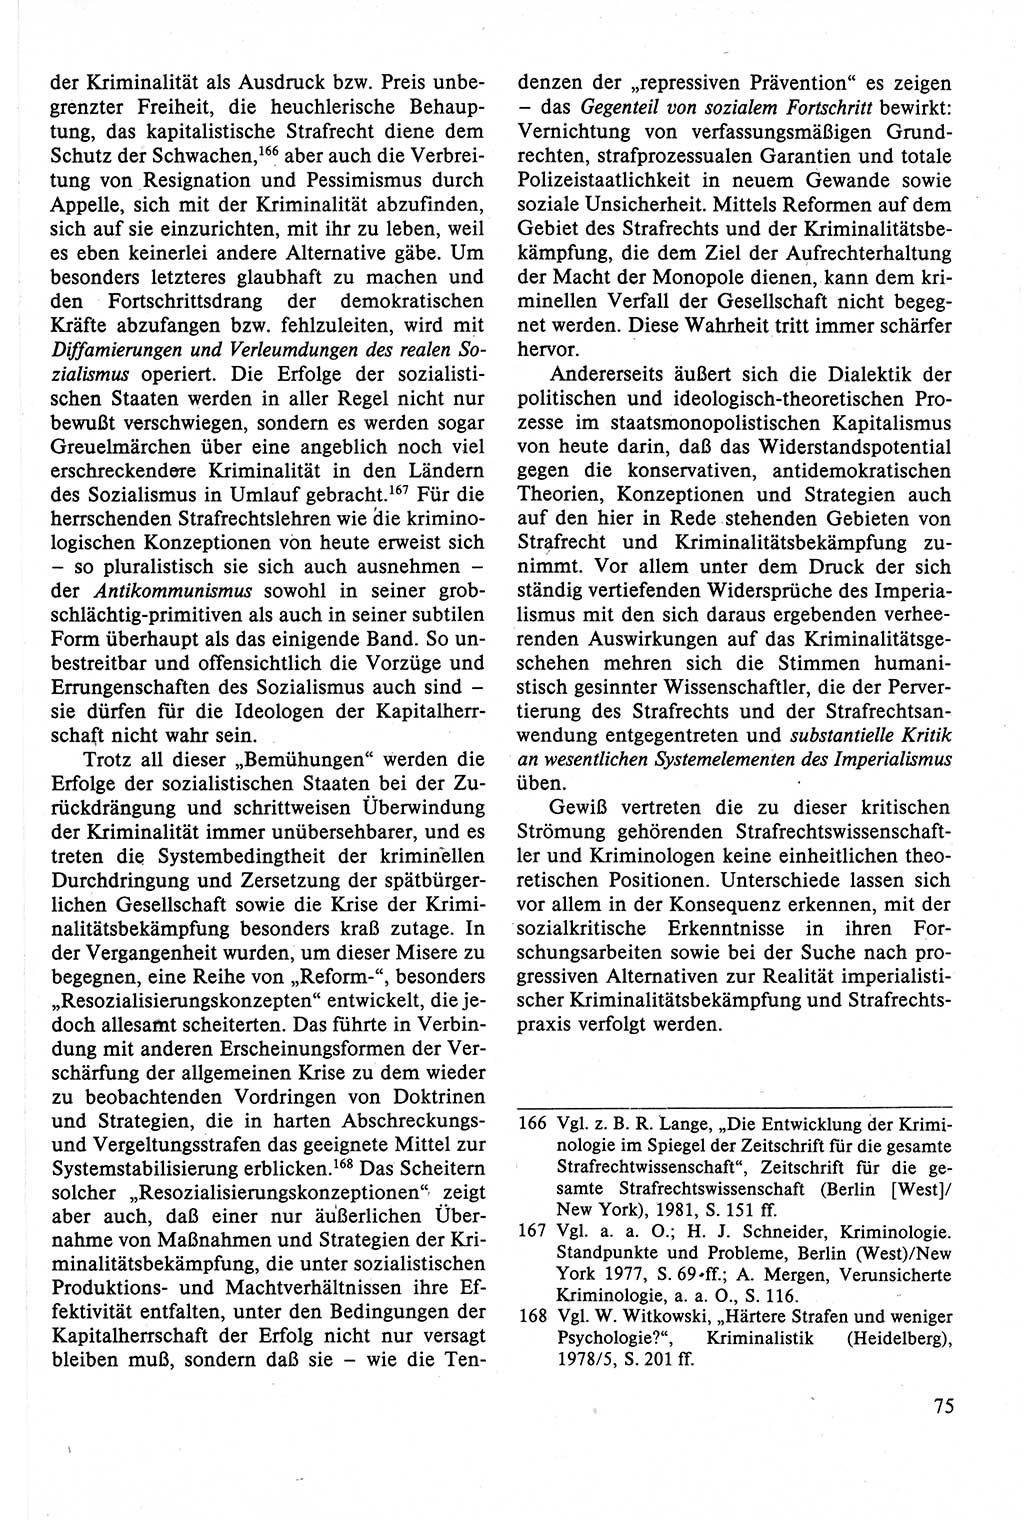 Strafrecht der DDR (Deutsche Demokratische Republik), Lehrbuch 1988, Seite 75 (Strafr. DDR Lb. 1988, S. 75)